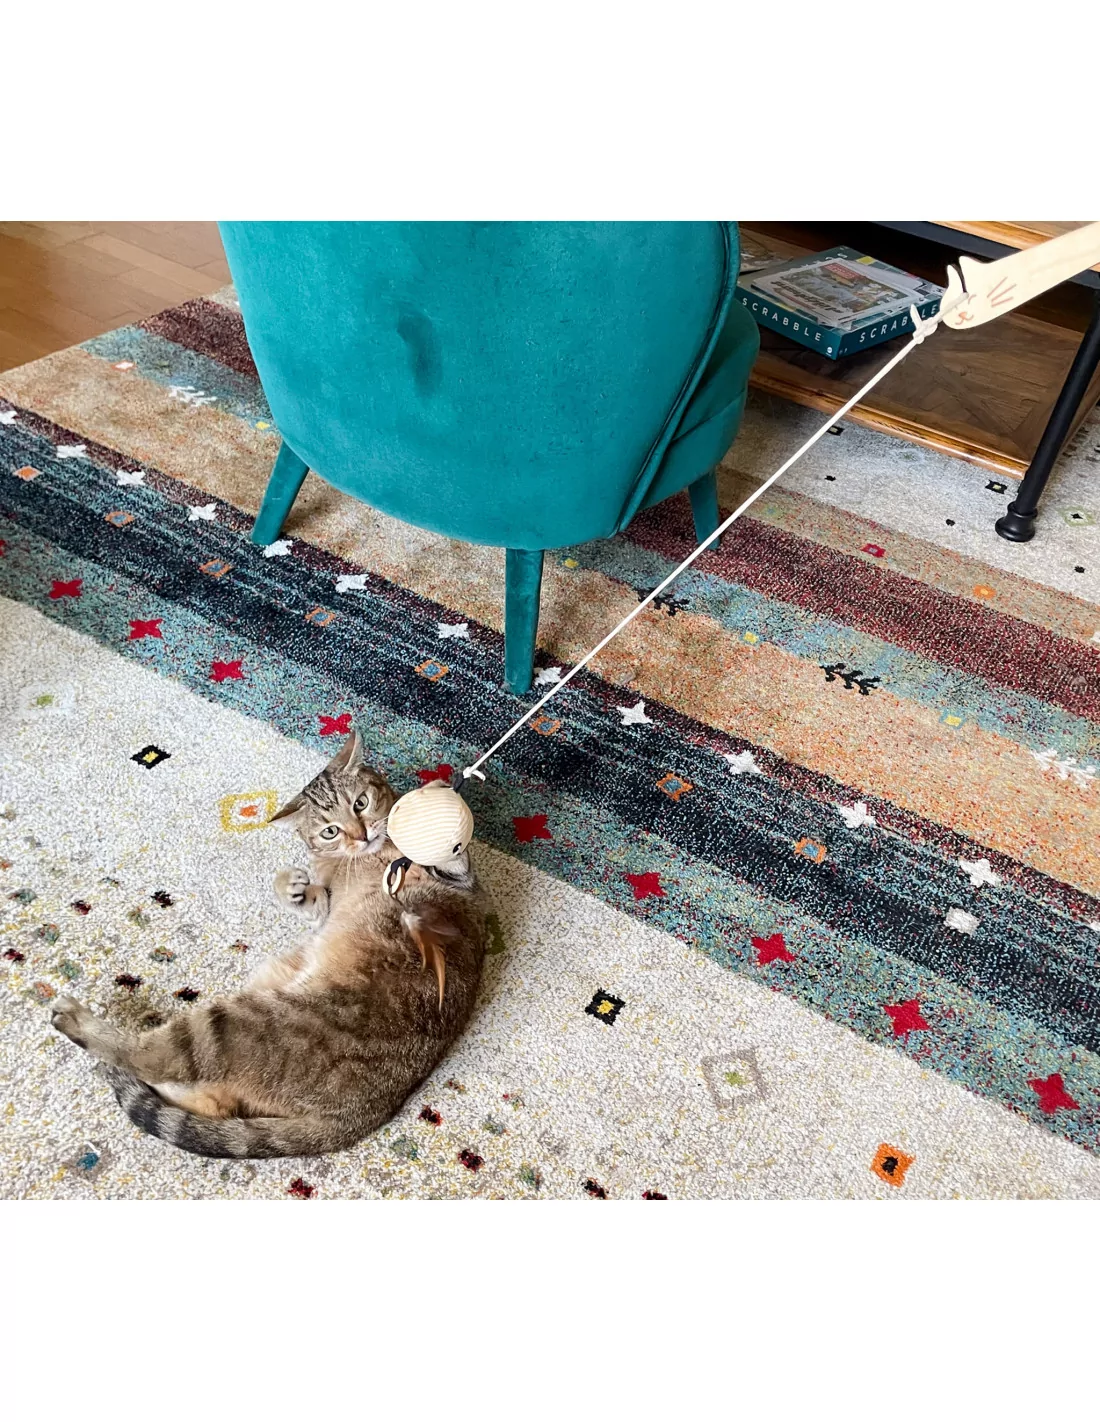 Le doudou pour chat Poulpo, l'indispensable | Petits Fripons